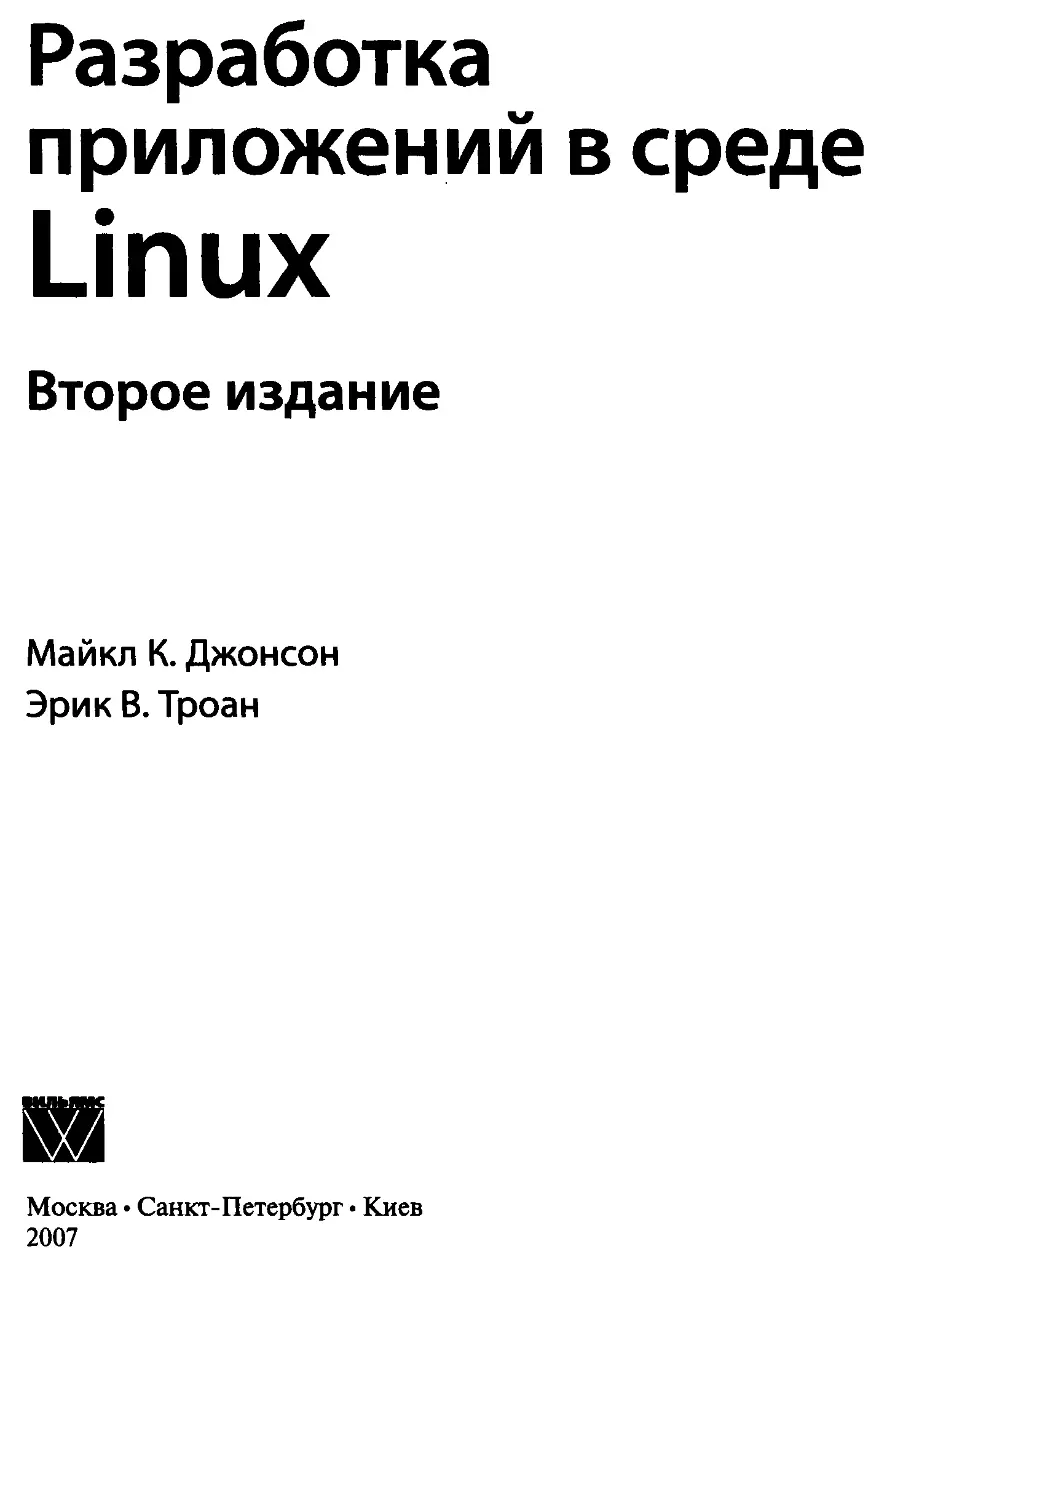 Разработка приложений в среде Linux. Джонсон, Майкл К., Троан, Эрик В.